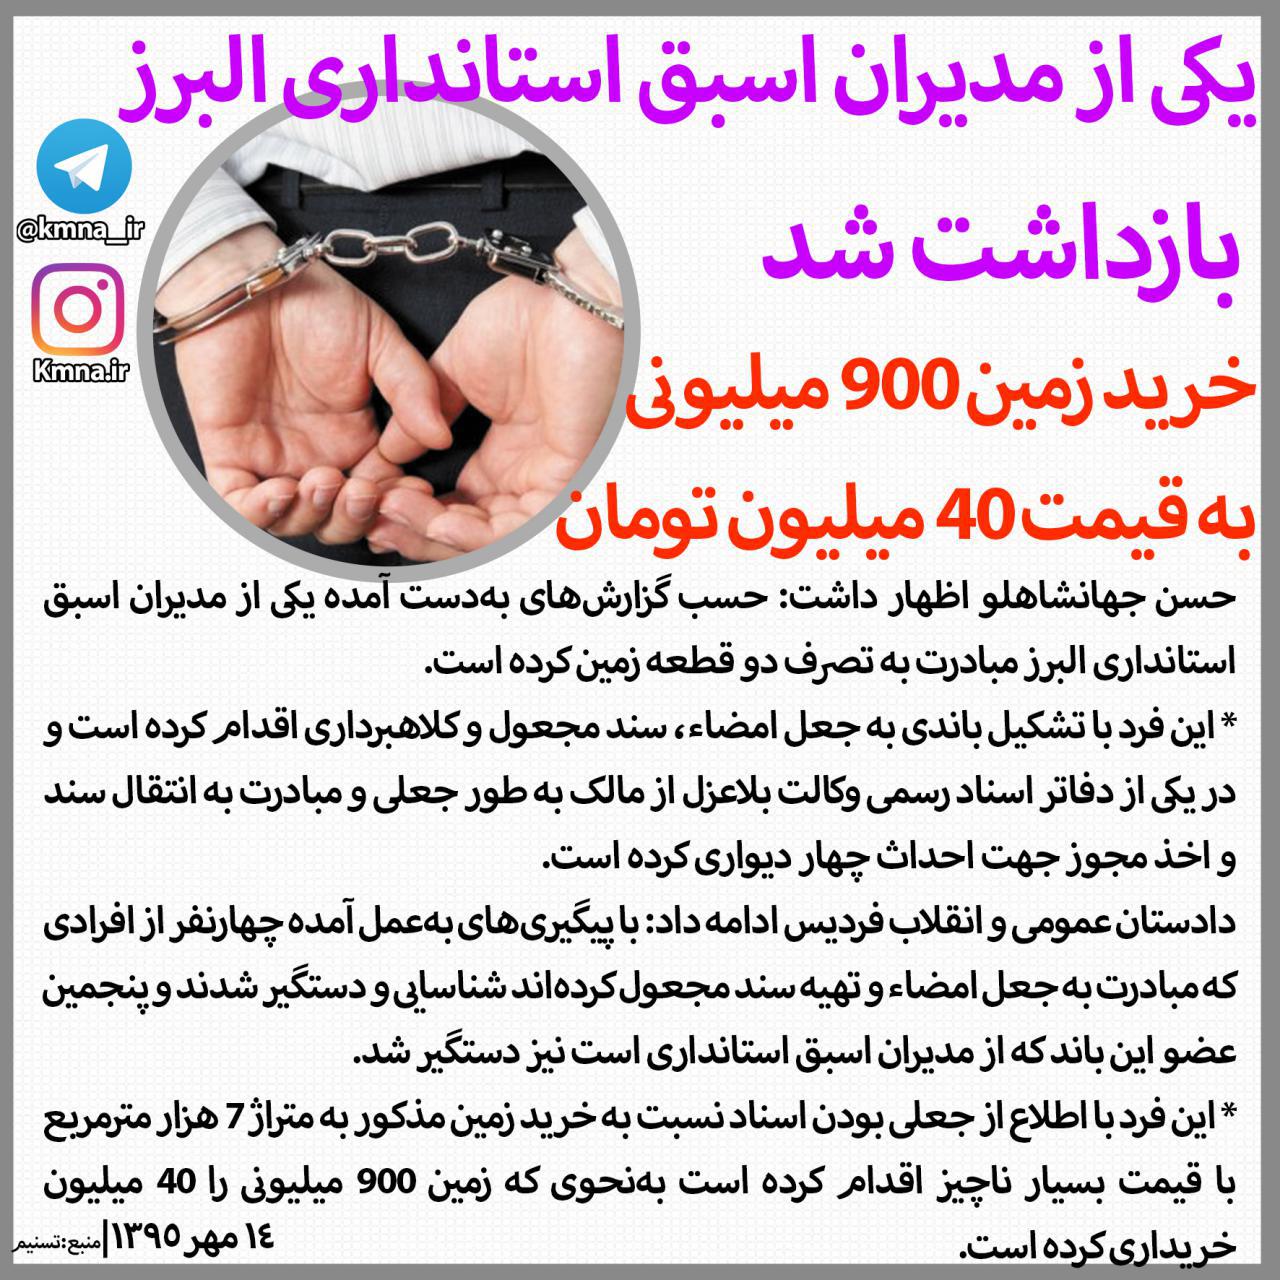 یکی از مدیران اسبق استانداری البرز بازداشت شد/خرید زمین ۹۰۰ میلیونی به قیمت ۴۰ میلیون تومان